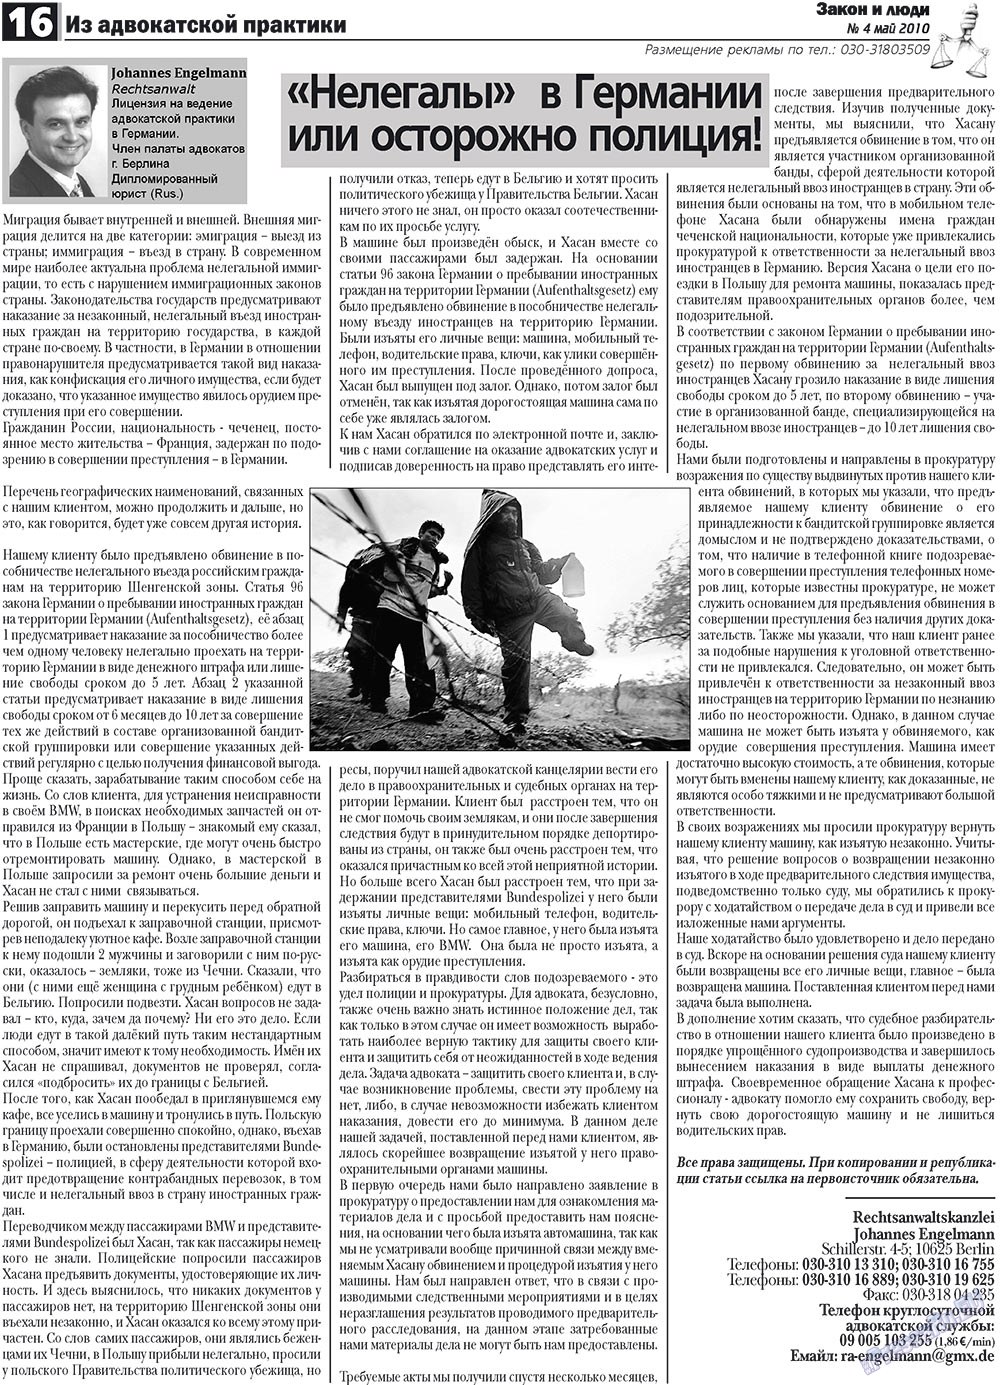 Закон и люди, газета. 2010 №4 стр.16